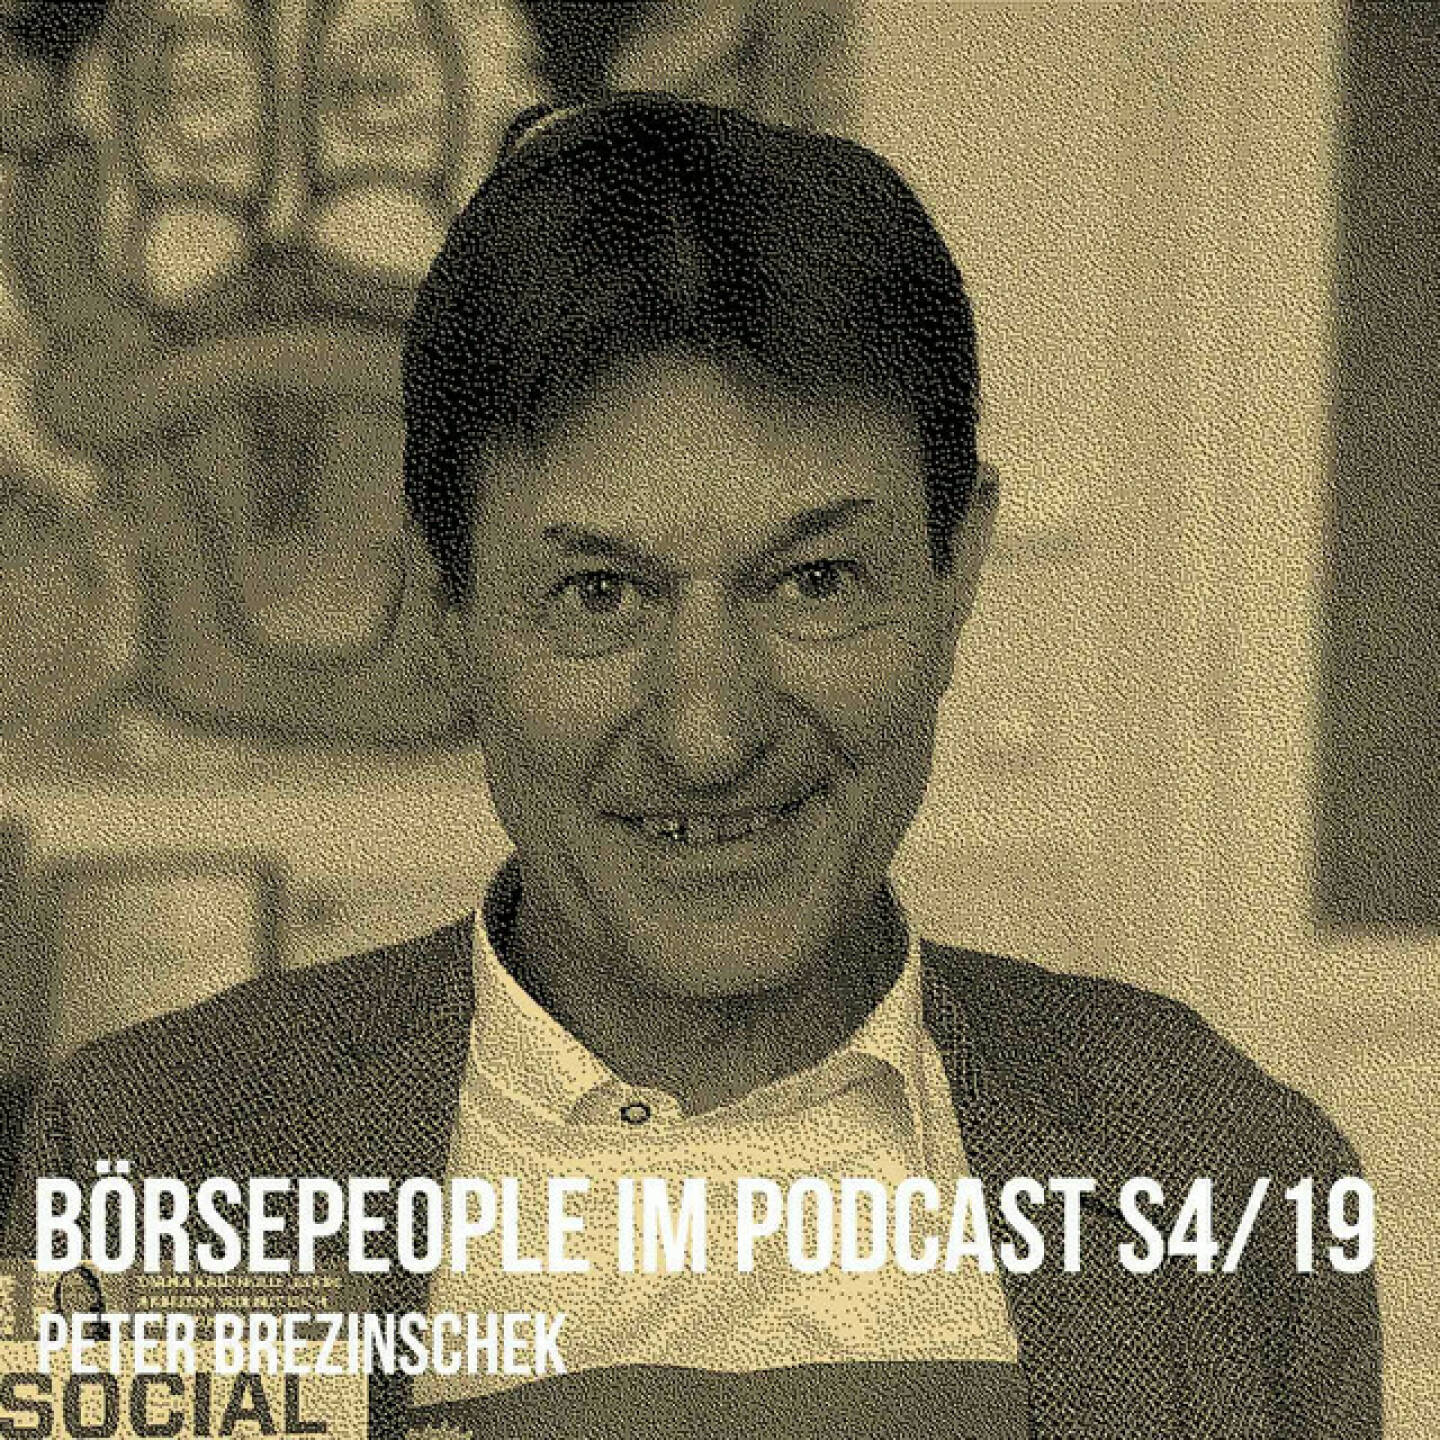 https://open.spotify.com/episode/78mTc8A9cwhxfXuz4jpxIV
Börsepeople im Podcast S4/19: Peter Brezinschek - <p>Peter Brezinschek (Bre) ist in 40 Jahren bei Raiffeisen zu einem Gesicht des Wiener Kapitalmarkts geworden und seit kurzem mit/nach seinem  Bre-xit selbstständiger Finanzmarktexperte und Fiskalrat. Wir sprechen über Early Years in der GZB, über eine Wien-Entdecker-Story, die eine Idee für Jim Rogers gewesen sein könnte, über Japan, eine Phase als Fondsmanager, aber auch eine Phase, in der sich Peter ziemlich alt vorgekommen ist. Wir sprechen über 40 Jahre Kapitalmarktgeschichte mit all seinen IPOs, Chancen und Verwerfungen und die Frage, ob Peter eine Rampensau ist (wie Claudia Haase fragt), warum Live-Interviews im Fernsehen besser sind als Aufzeichnungen und der Sport so wichtig ist. Und wir reden über ein starkes Raiffeisen Research Team mit zB Gunter Deuber und Matthias Reith und was Peter jetzt so machen wird. U.a. über das mit dem Bäume pflanzen auch bei mir im Alsergrund.<br/><br/>About: Die Serie Börsepeople findet im Rahmen von <a href=http://www.audio-cd.at target=_blank>http://www.audio-cd.at</a> und dem Podcast &#34;Audio-CD.at Indie Podcasts&#34; statt. Es handelt sich dabei um typische Personality- und Werdegang-Gespräche. Die Season 4 umfasst unter dem Motto „23 Börsepeople“ erstmals statt 23 bisher 22 Podcast-Talks, weil der Grossteil 2023 gesendet wird., Presenter der Season 4 ist wieder die Management-Factory. Welcher der meistgehörte Börsepeople Podcast ist, sieht man unter <a href=http://www.audio-cd.at/people target=_blank>http://www.audio-cd.at/people.</a> Nach den ersten drei Seasons führte Thomas Tschol und gewann dafür einen Number One Award für 2022. Der Zwischenstand des laufenden Rankings ist tagesaktuell um 12 Uhr aktualisiert.<br/><br/>Bewertungen bei Apple (oder auch Spotify) machen mir Freude:https://podcasts.apple.com/at/podcast/audio-cd-at-indie-podcasts-wiener-börse-sport-musik-und-mehr/id1484919130 .</p>